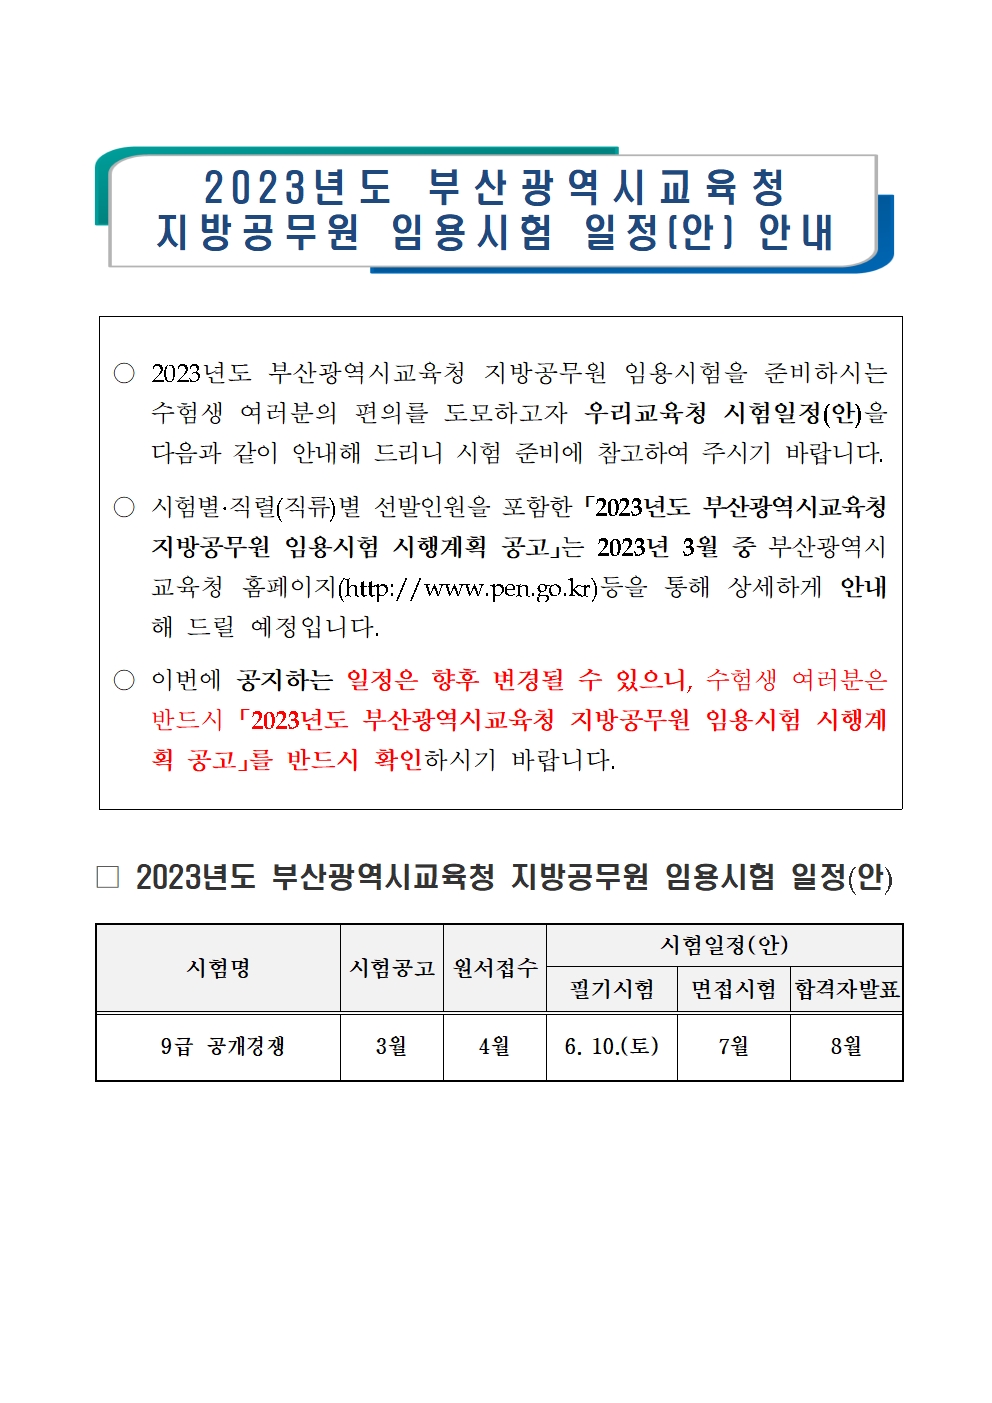 공기출 - 2023년도 부산광역시교육청 지방공무원 임용시험 일정 안내